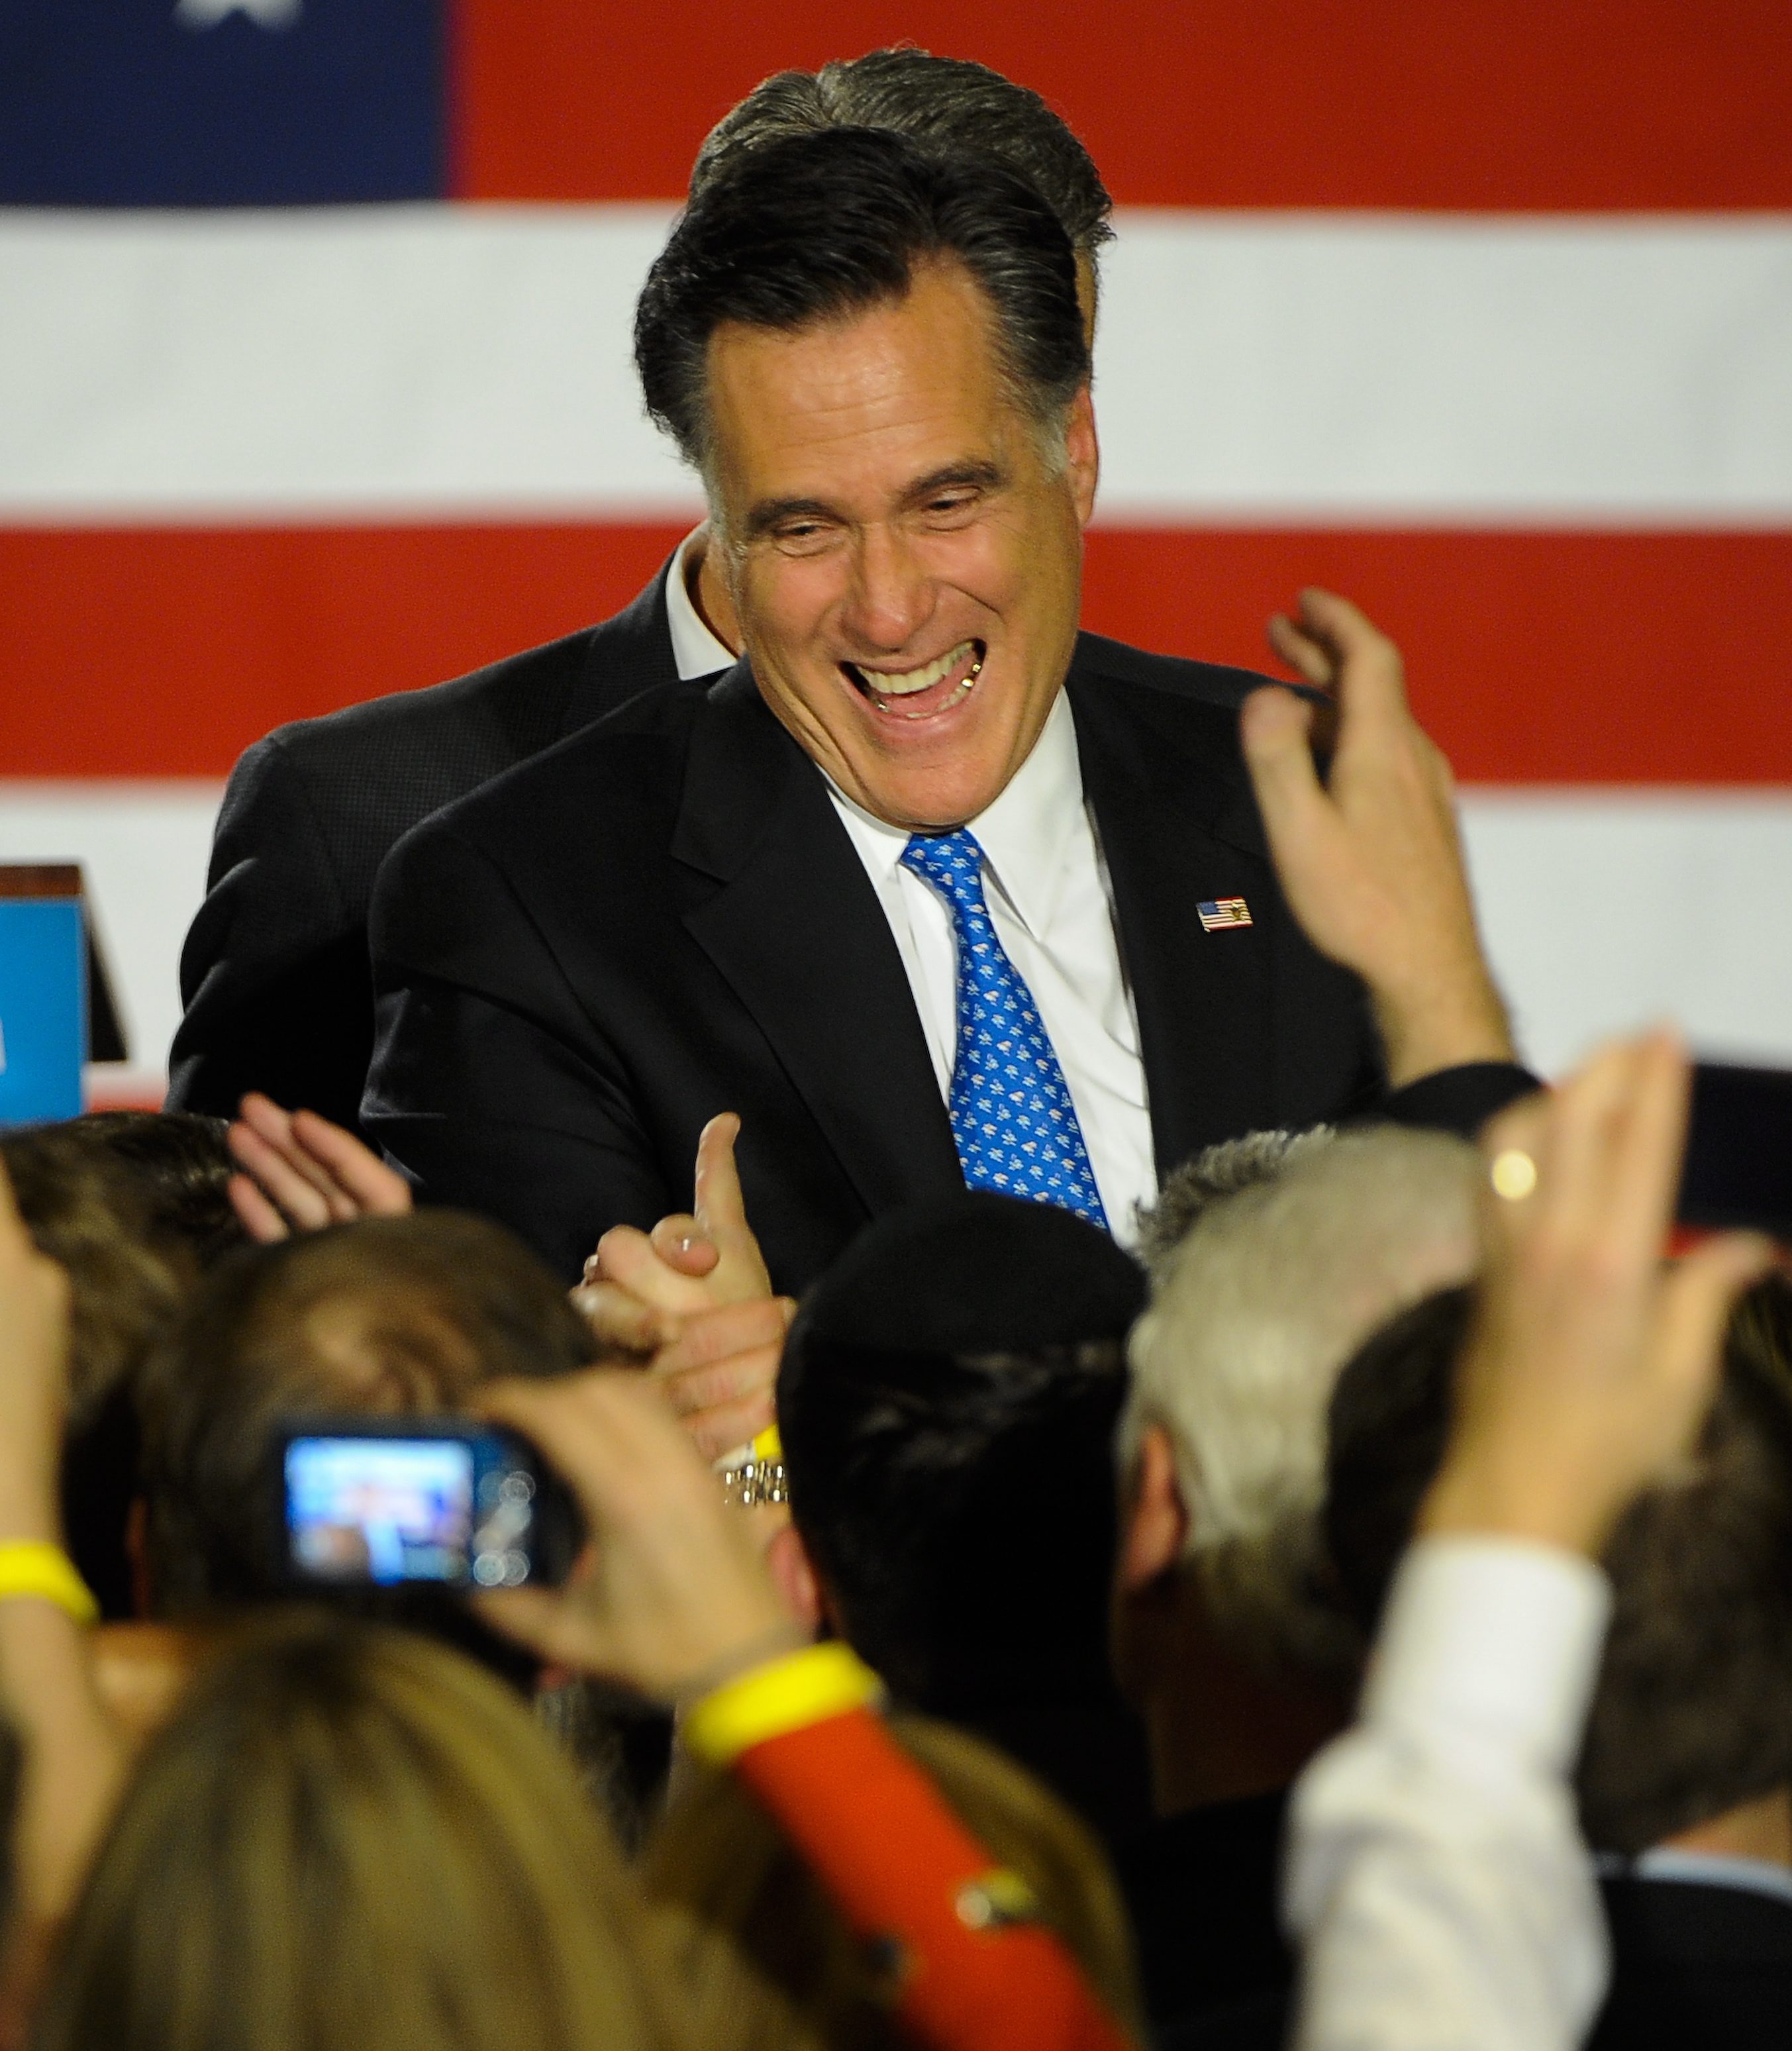 Политиката на Обама е привлекателна за хората, които не плащат данъци, твърди Мит Ромни